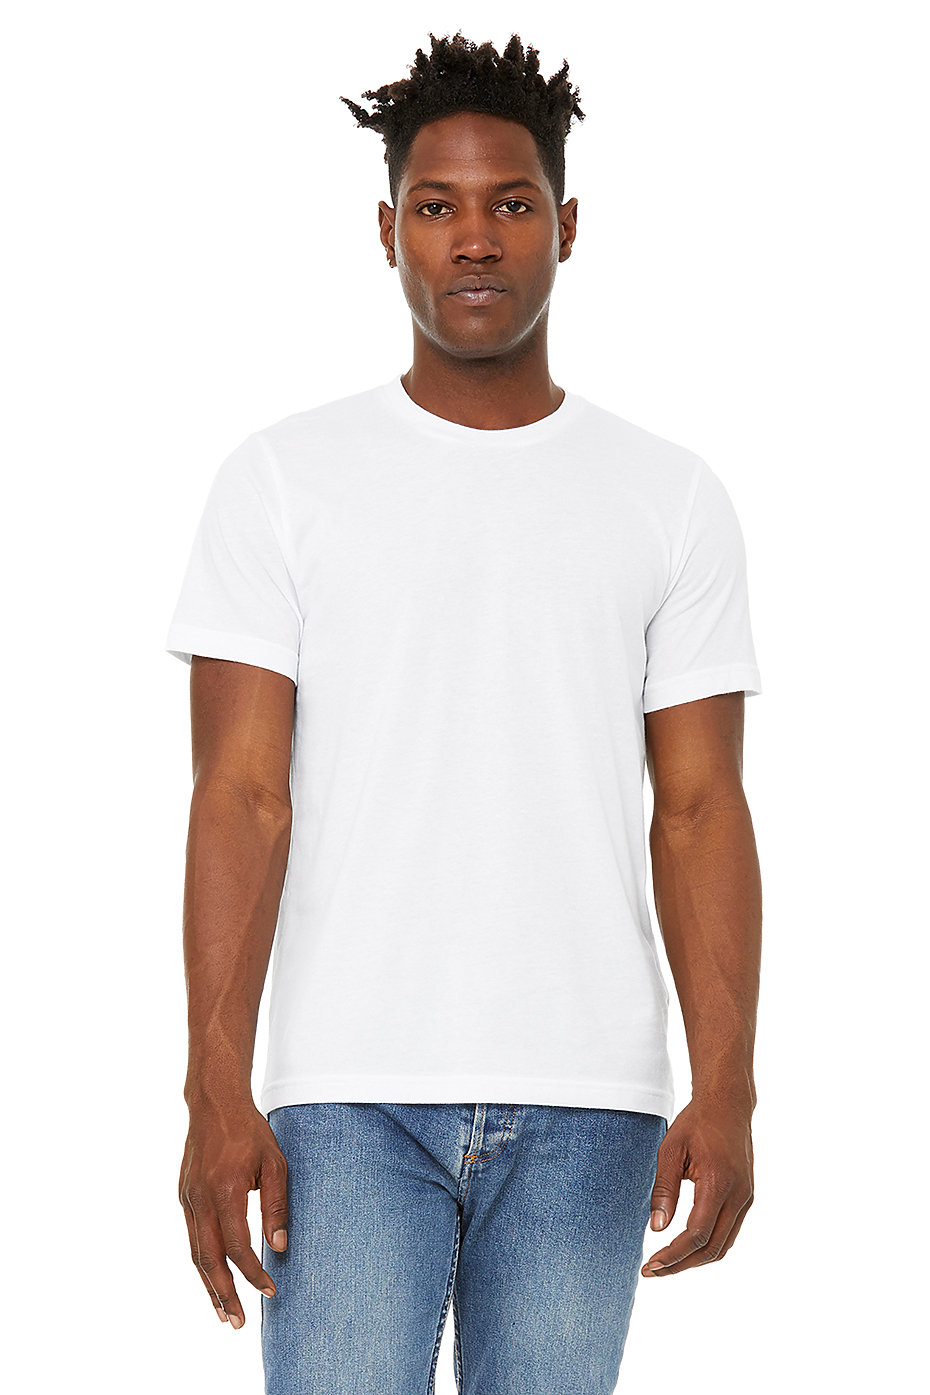 Bella Canvas Shirt, Wholesale Tshirt, Bulk T Shirt, Plain T Shirt, Blank Bella Canvas Shirts, Bulk Unisex Shirt, Bulk Blank Shirts